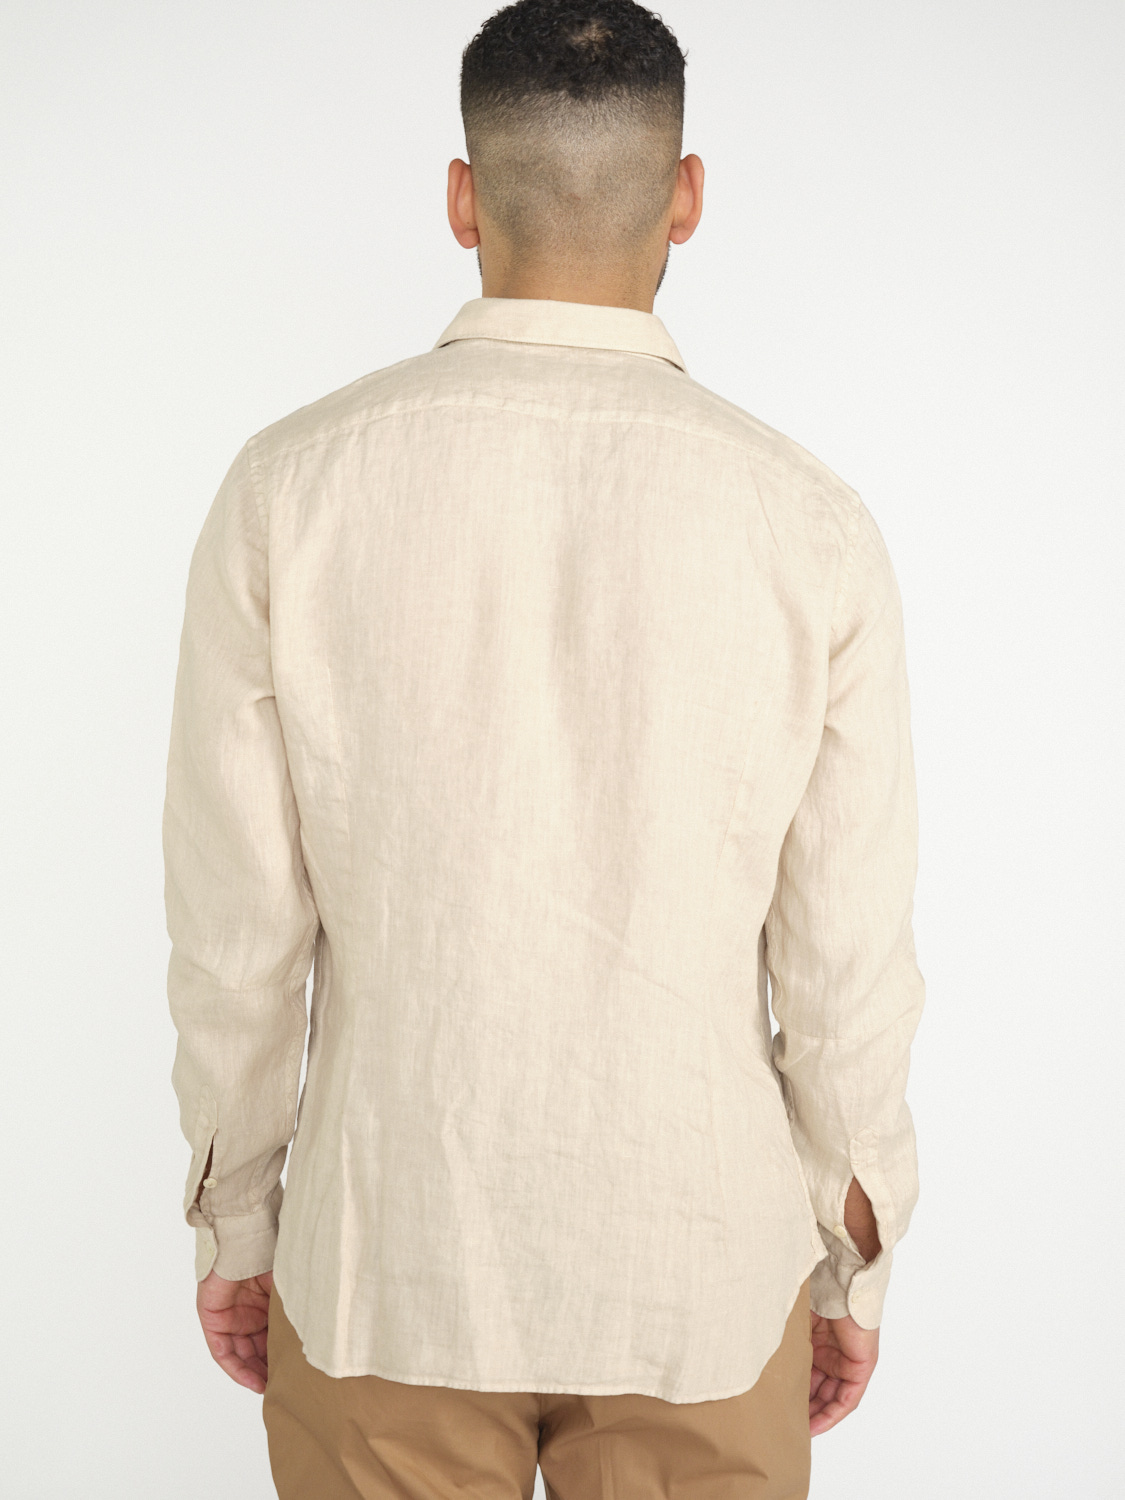 Tintoria Mattei 954 Linen shirt  beige XL